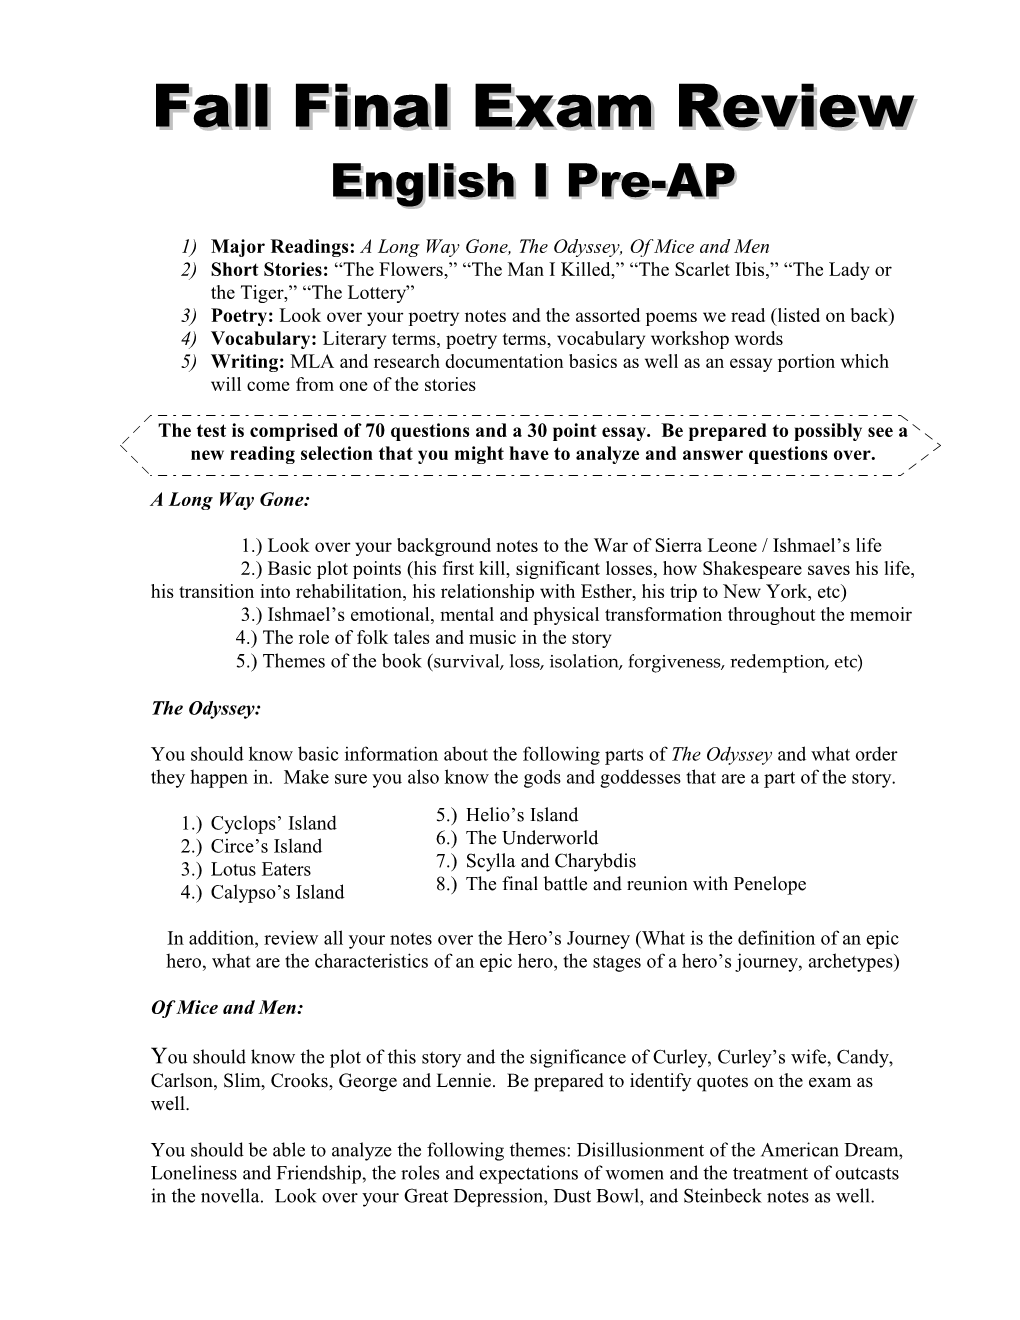 Fall Final Exam Review Sheet English I